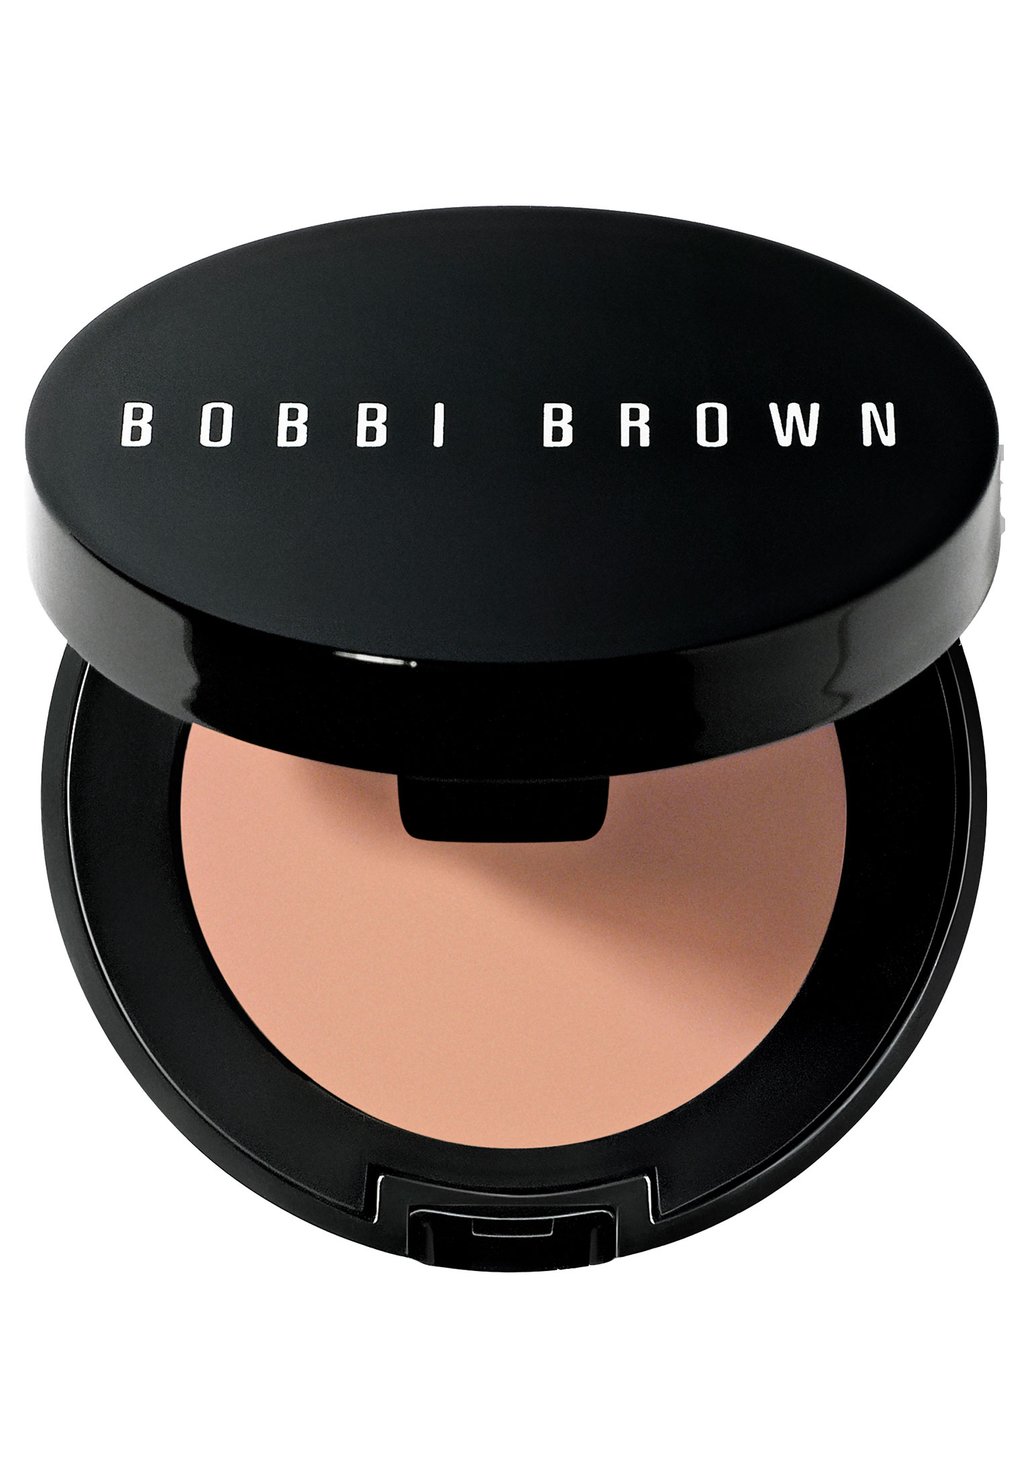 Консилер Corrector Bobbi Brown, цвет light bisque консилер skin corrector stick bobbi brown цвет deep bisque